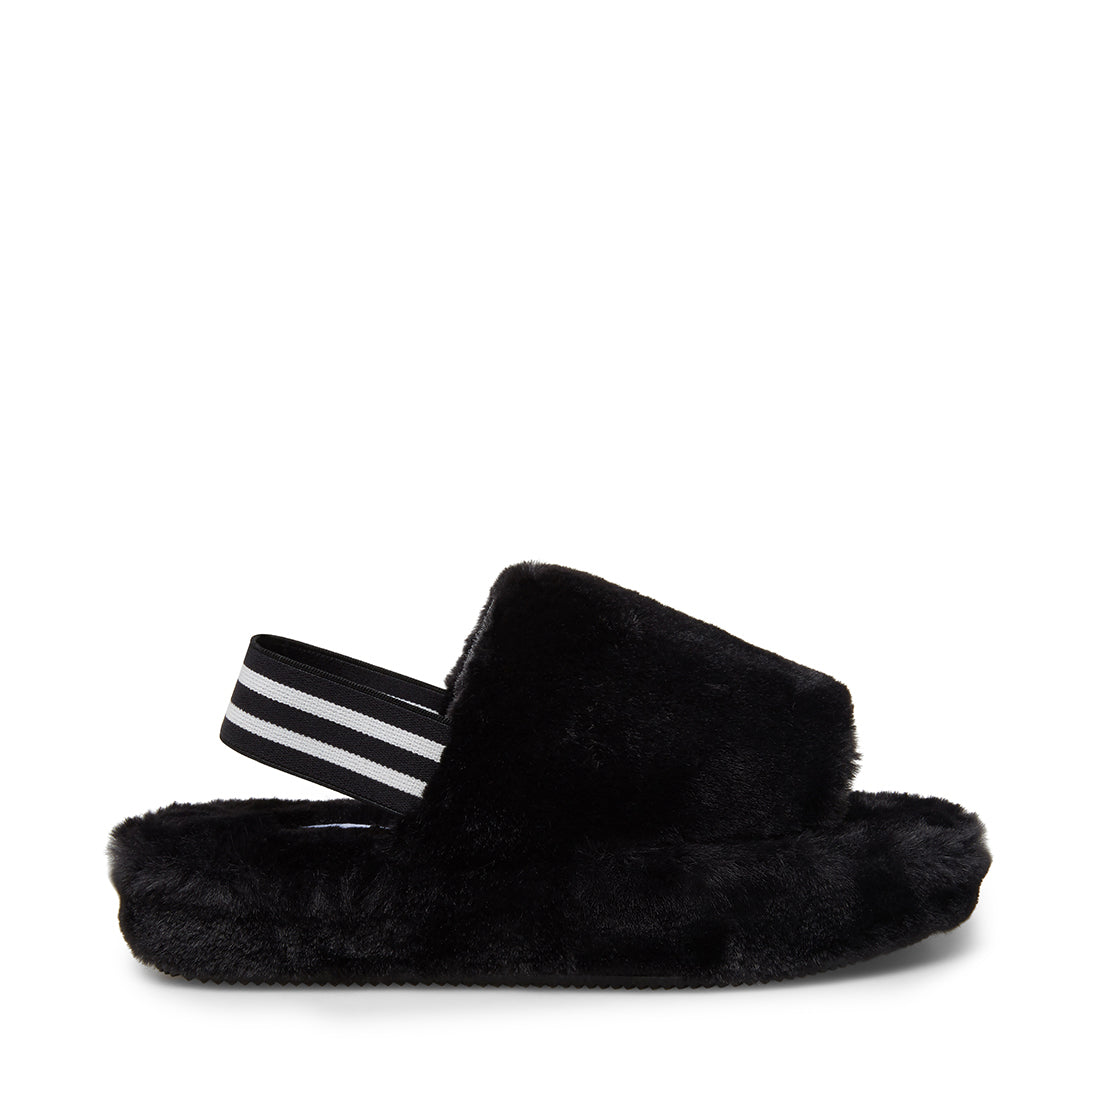 steve madden black slippers